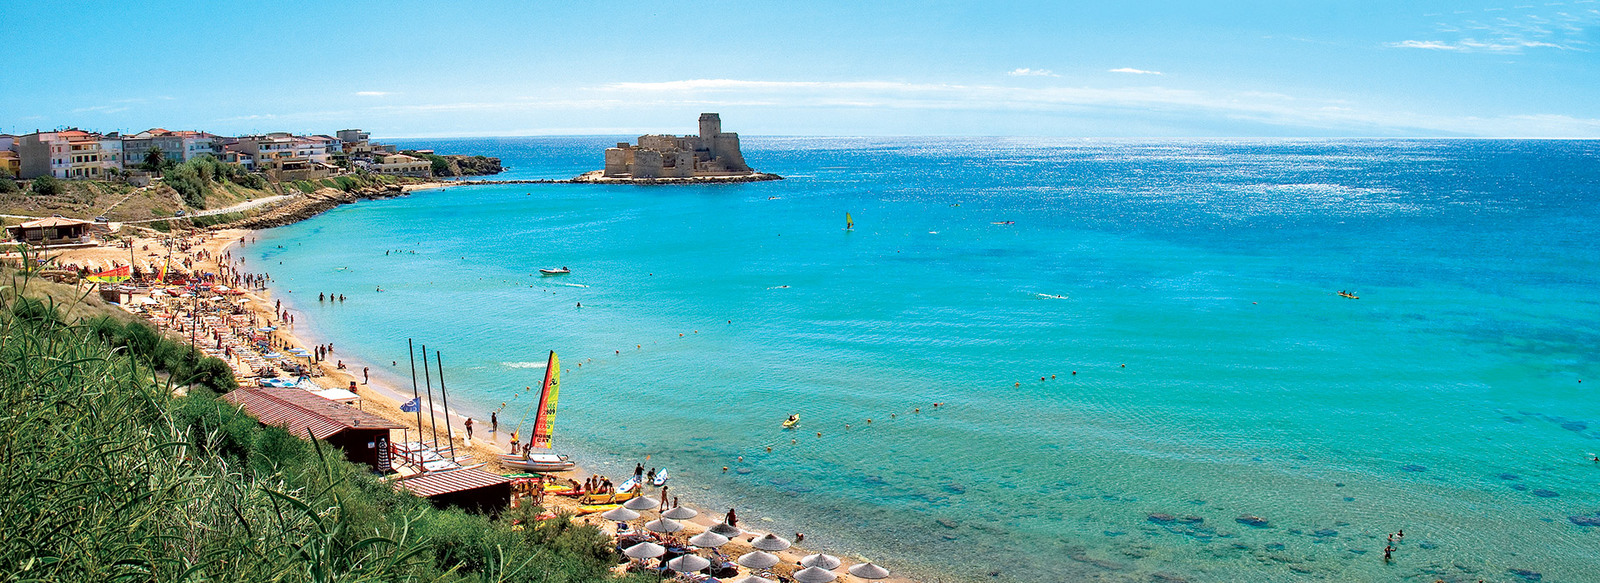 Il Castello Aragonese sullo sfondo di un mare cristallino